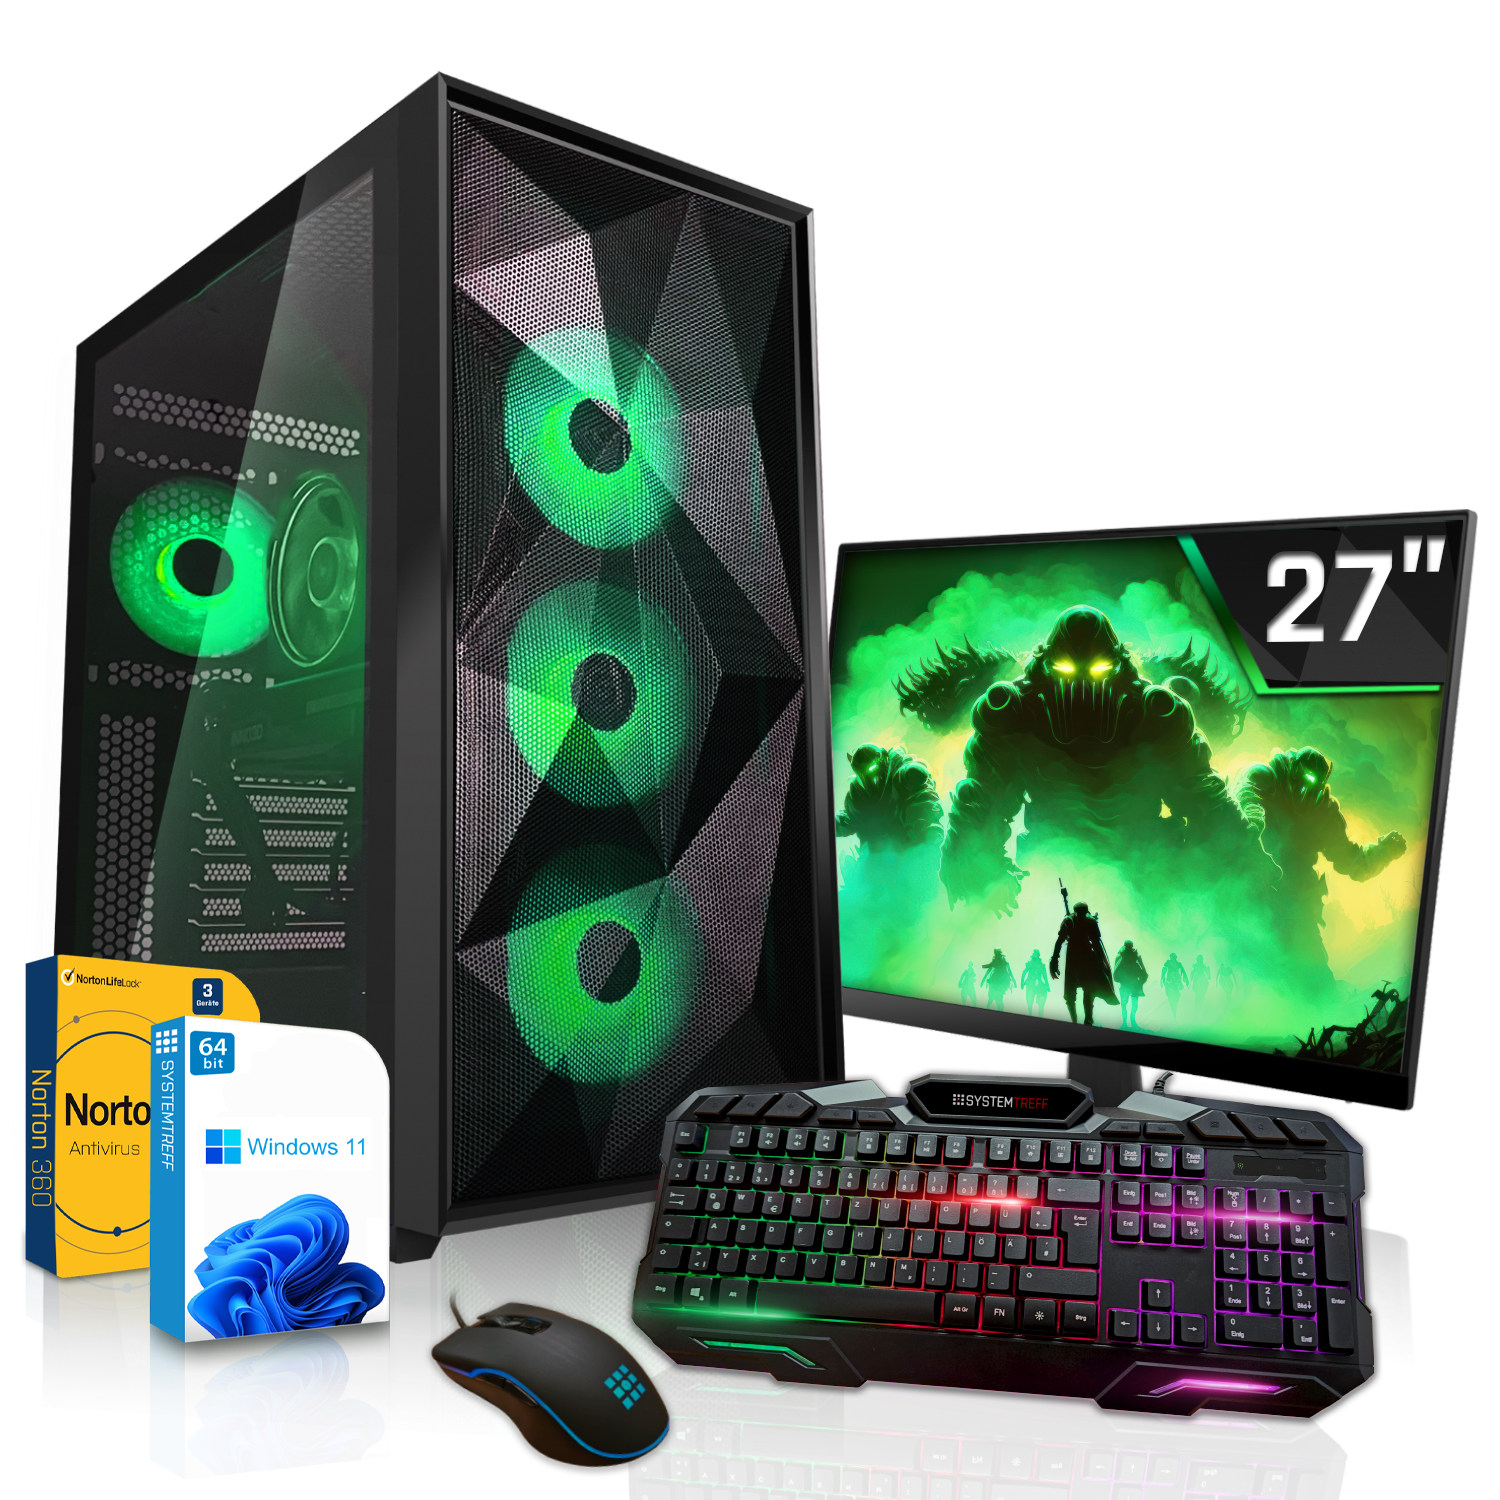 SYSTEMTREFF Gaming Komplett PC Komplett mit Prozessor, 16 Ti GDDR6, 1000 4070 GB GB i7-13700KF, RAM, Core mSSD, 12GB i7-13700KF 32 Nvidia RTX Intel GeForce GB